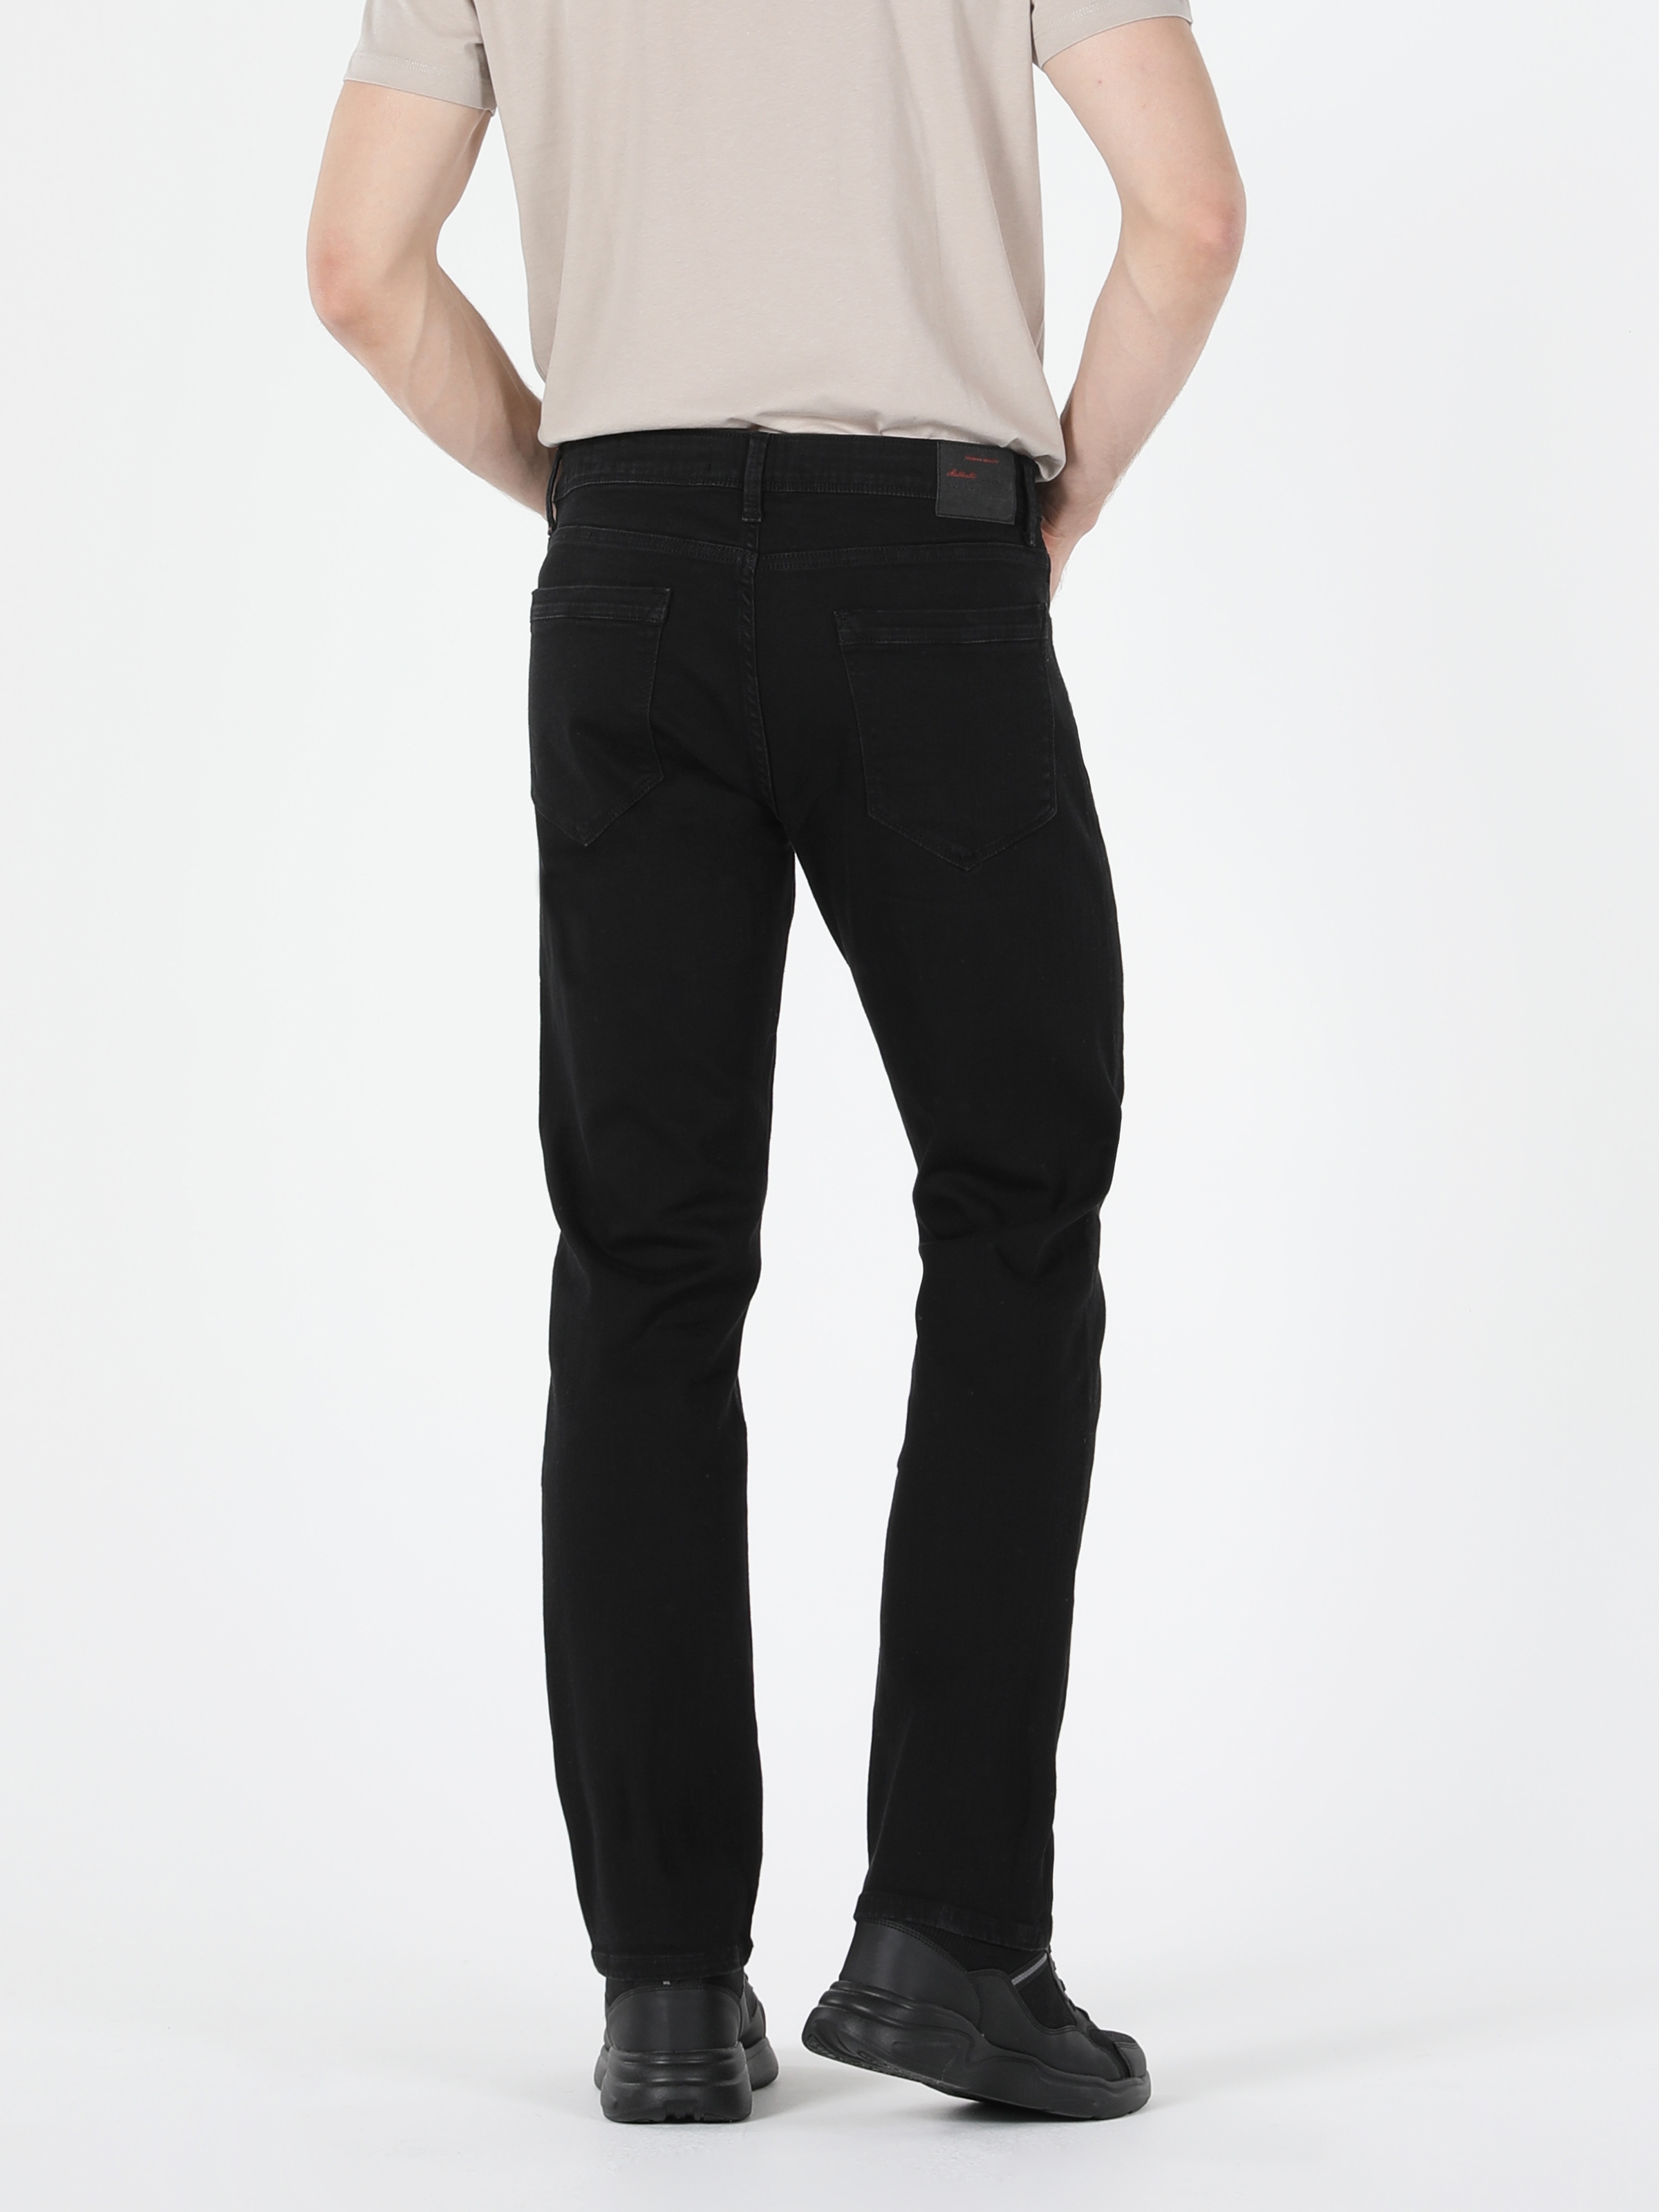 Afficher les détails de 045 David Coupe Normale Taille Normale Jambe Droite Pantalon En Jean Noir Pour Hommes